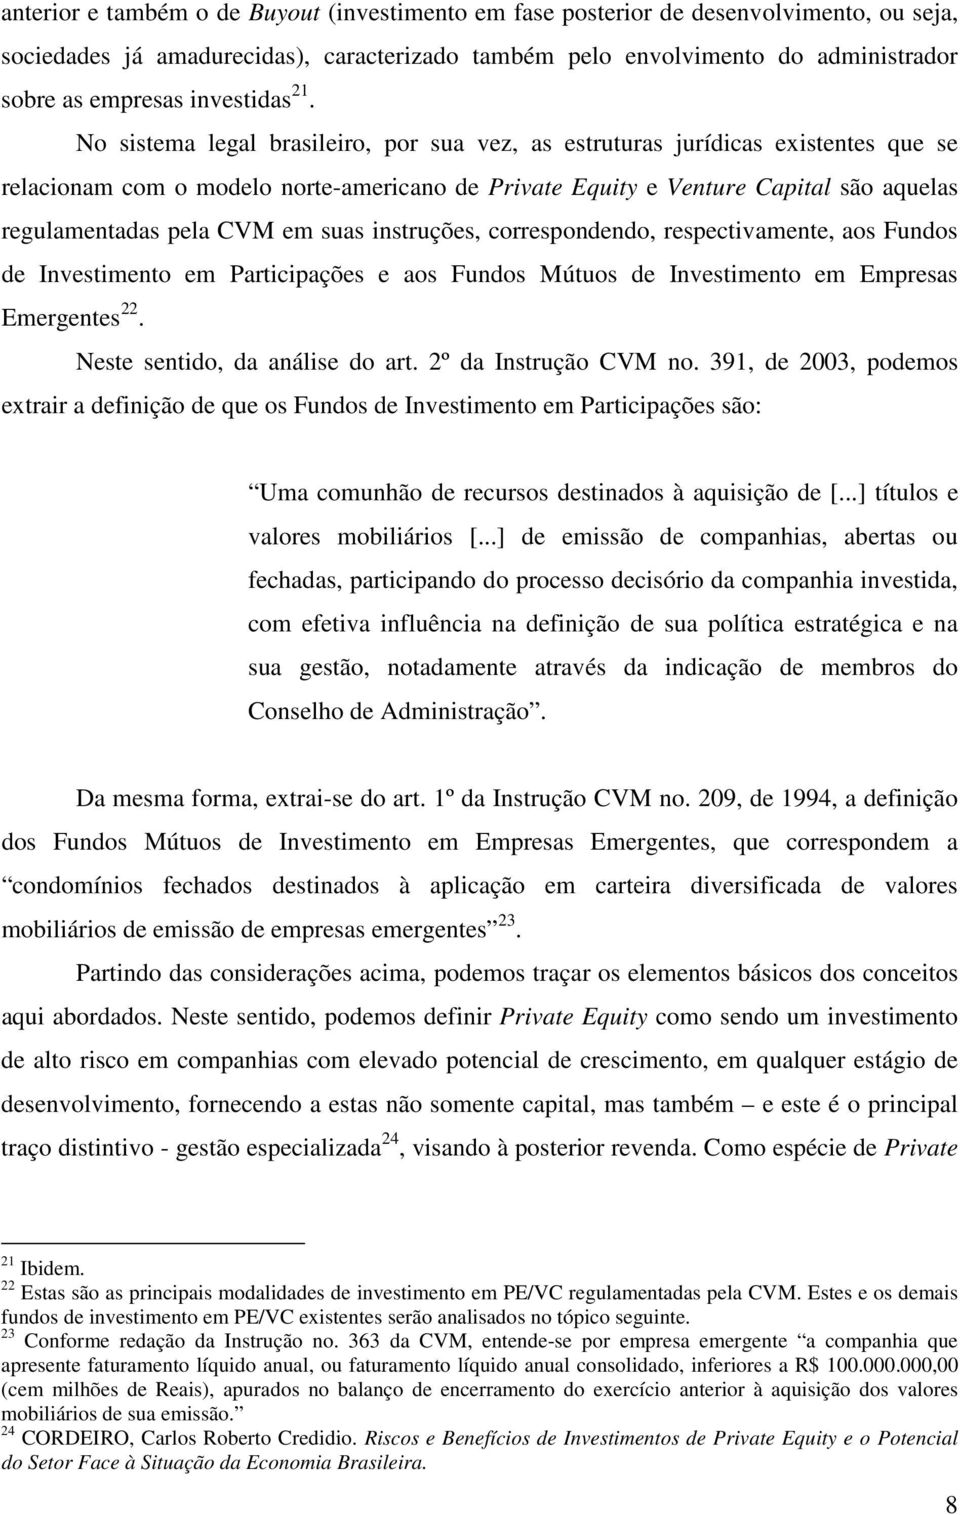 No sistema legal brasileiro, por sua vez, as estruturas jurídicas existentes que se relacionam com o modelo norte-americano de Private Equity e Venture Capital são aquelas regulamentadas pela CVM em